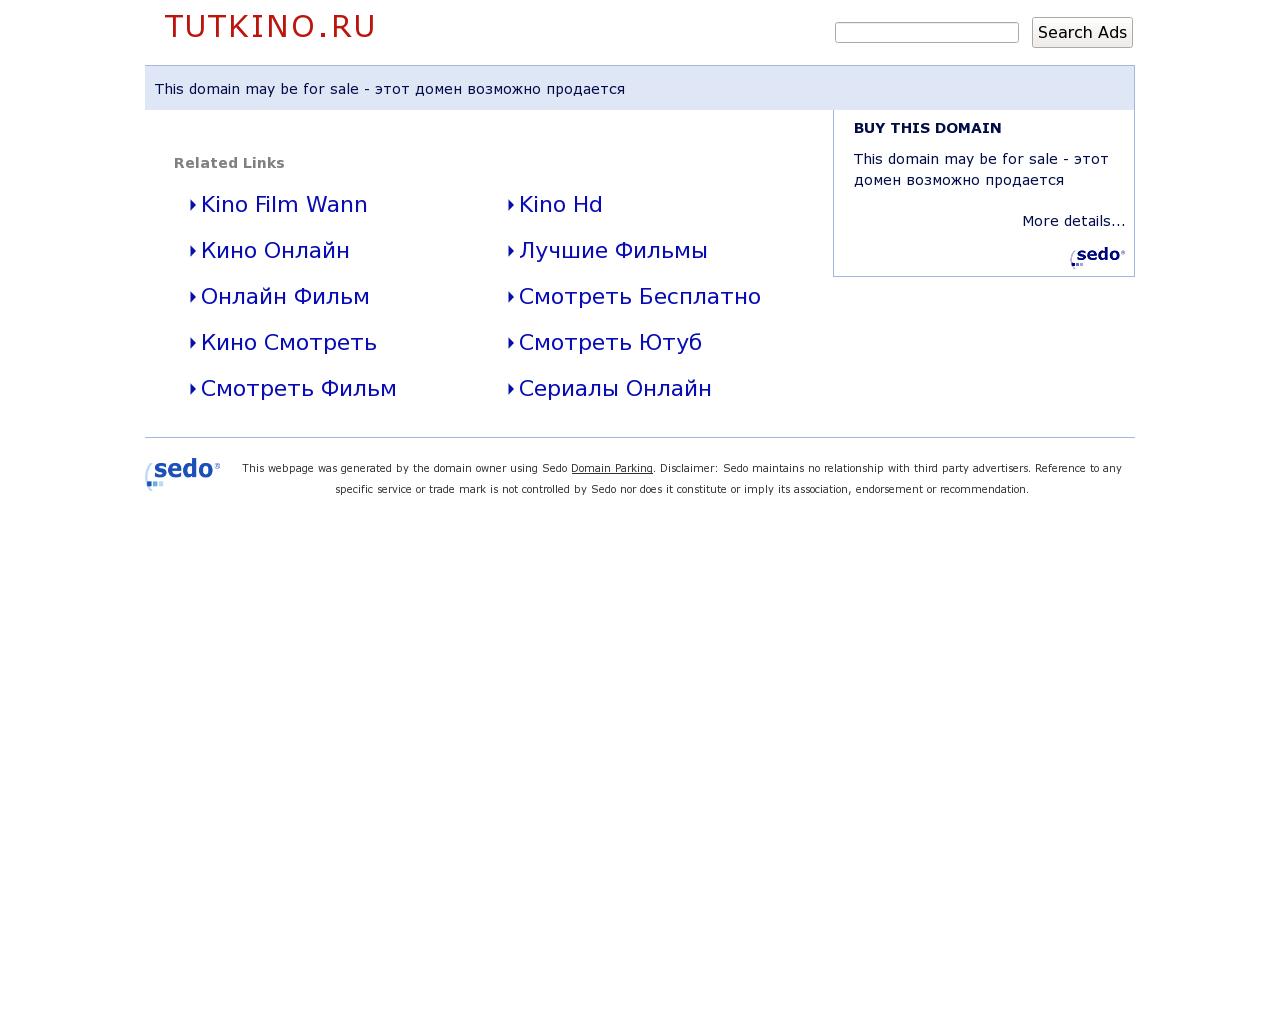 Изображение сайта tutkino.ru в разрешении 1280x1024